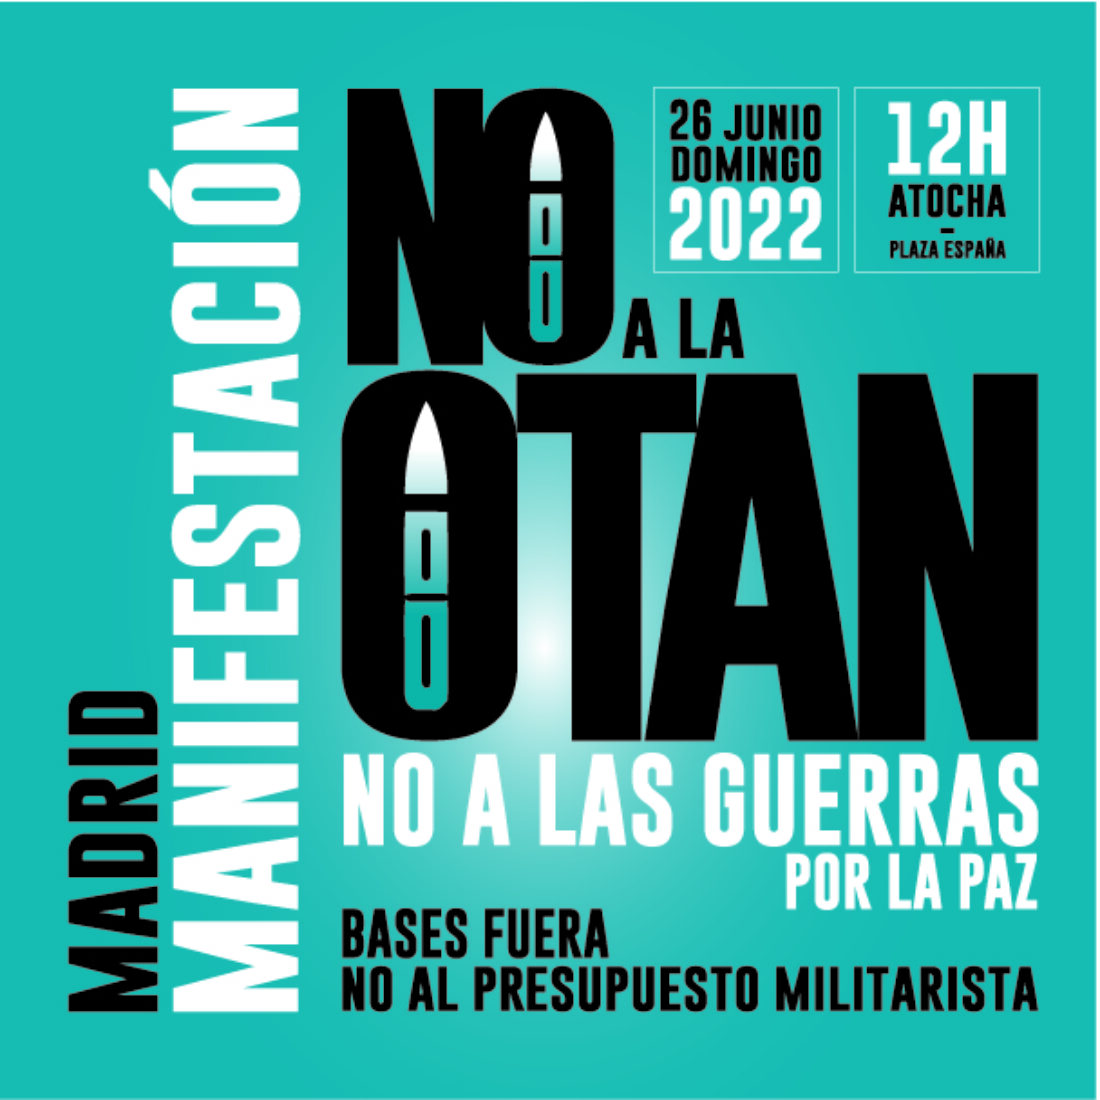 CGT participará en las acciones organizadas por la Asamblea Popular contra la Guerra de Madrid, y en la manifestación organizada por esta, por la PEPON y otras organizaciones